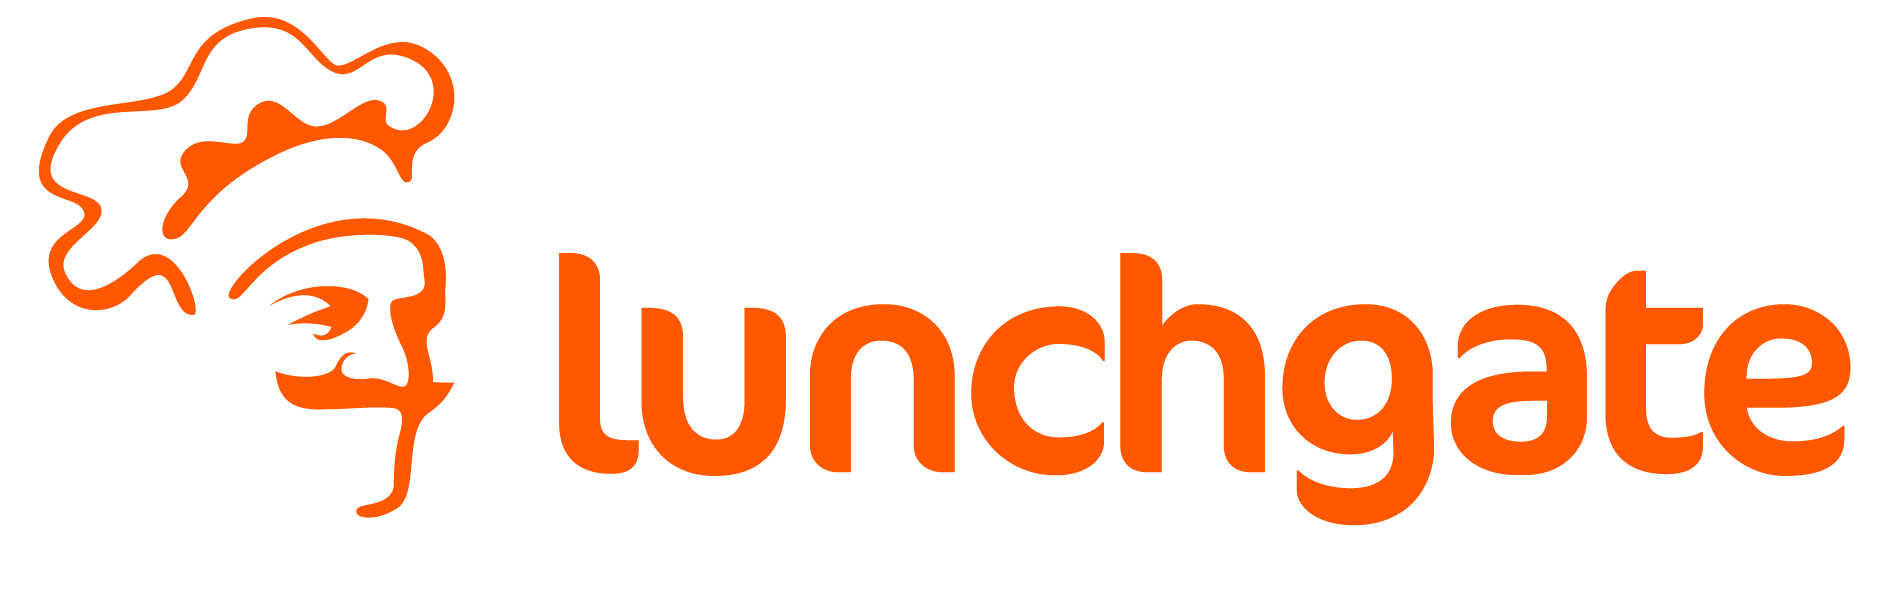 Lunchgate - Ihr Partner für die Digitalisierung in der Gastronomie